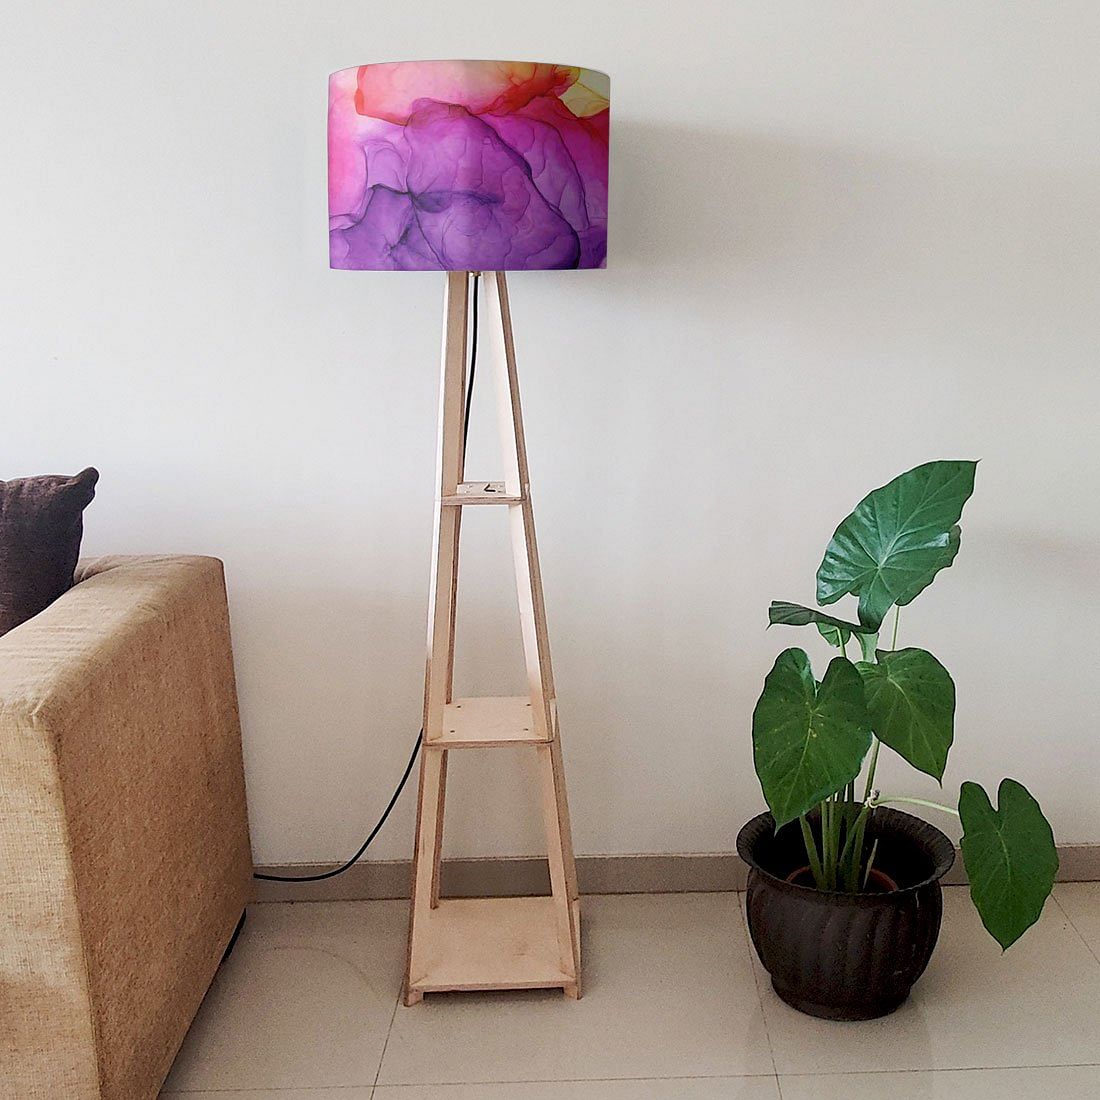 Shelf Tripod Floor Lamp for Bedside Light - Watercolor Nutcase